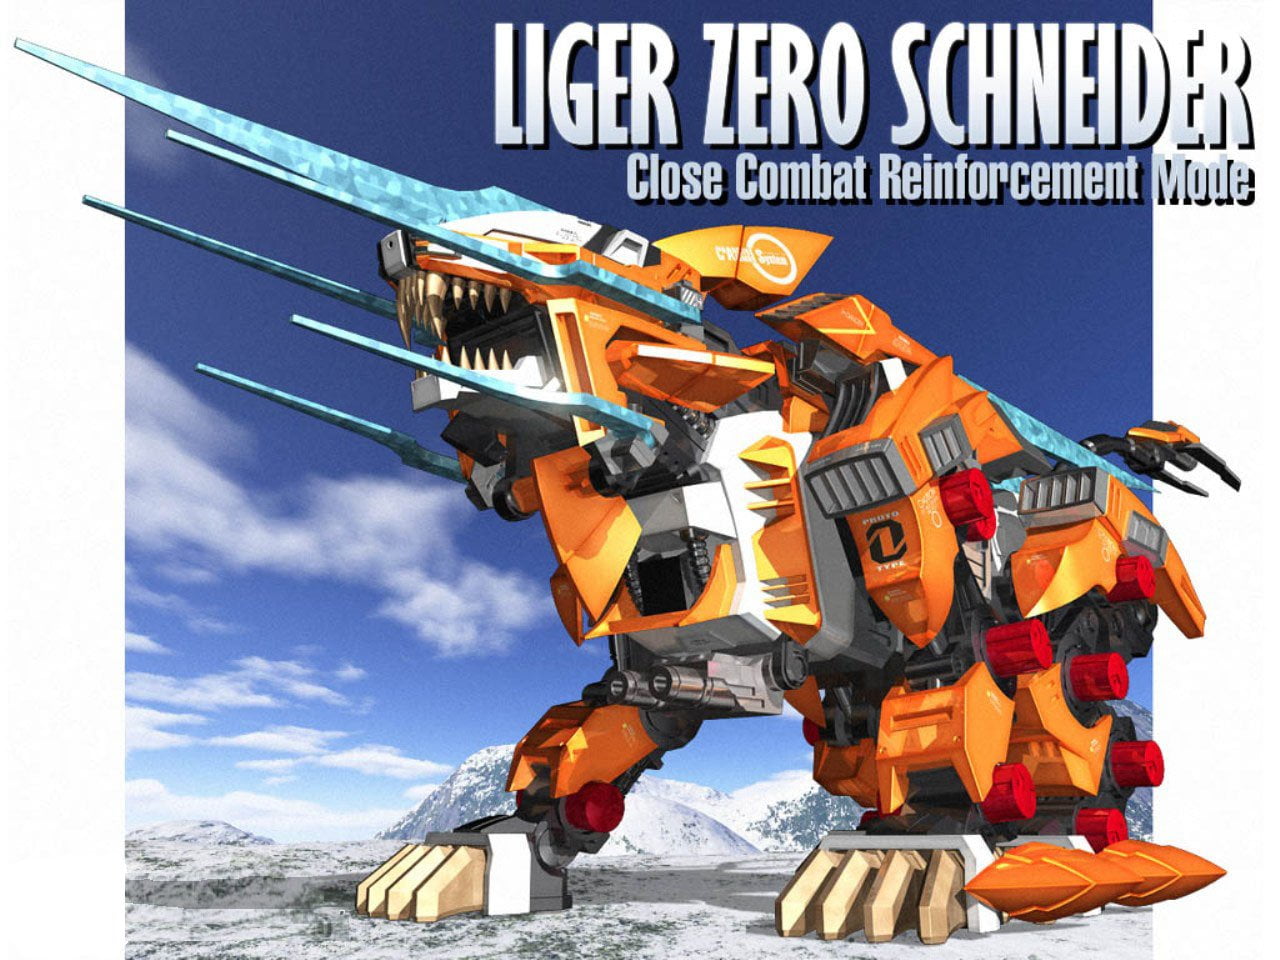 orange and gray Liger Zero Schneider close combat reinforcement mode illustration